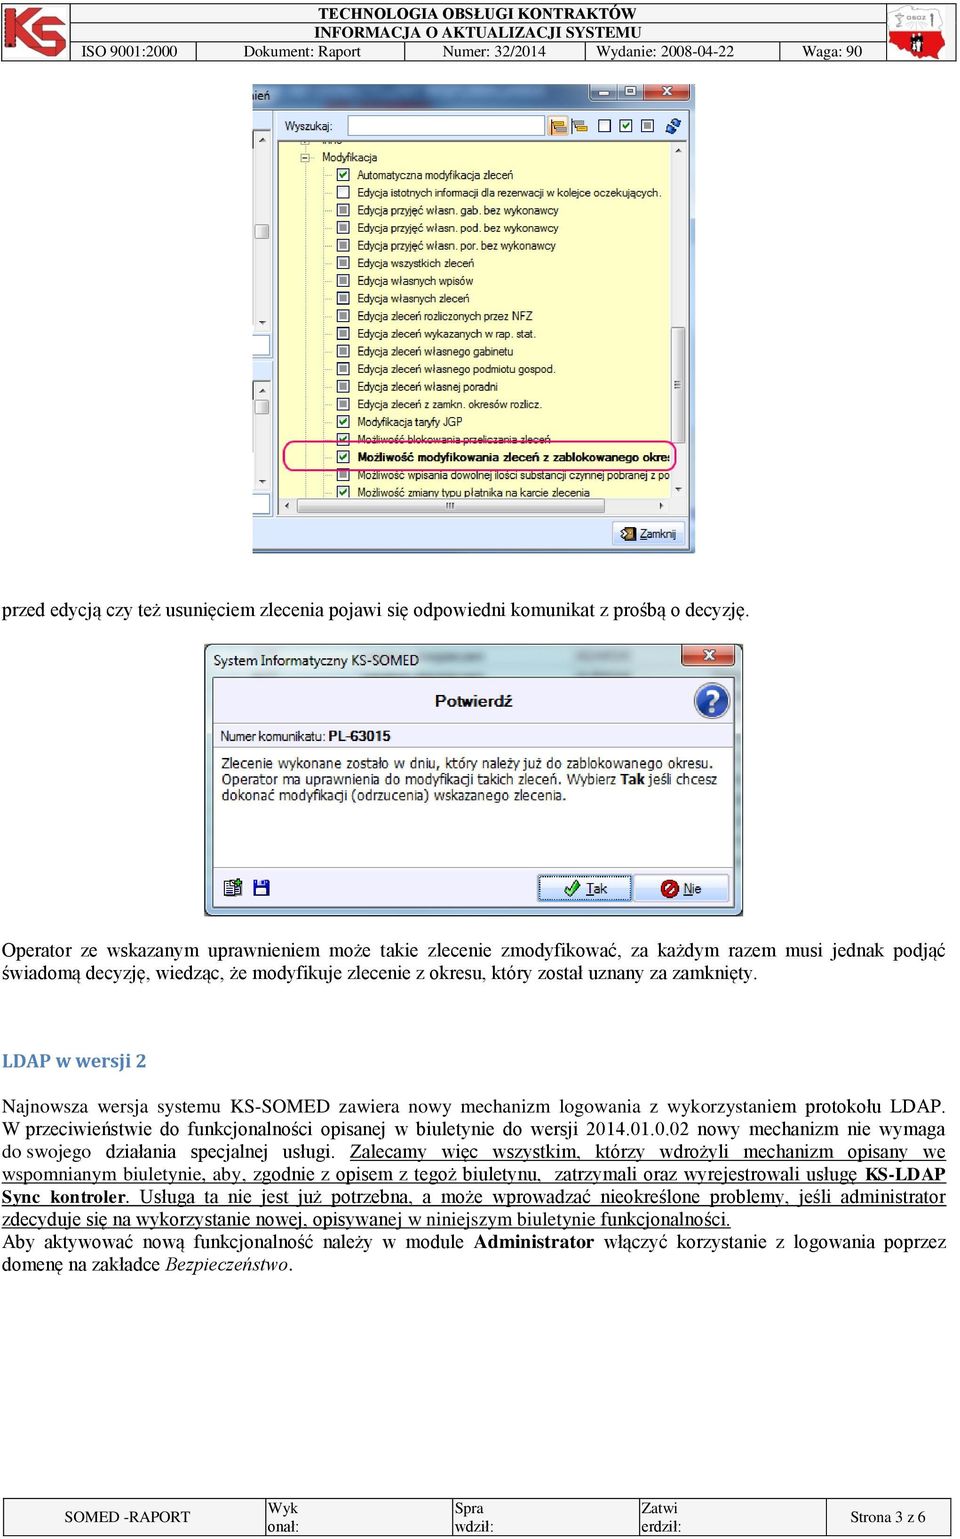 LDAP w wersji 2 Najnowsza wersja systemu KS-SOMED zawiera nowy mechanizm logowania z wykorzystaniem protokołu LDAP. W przeciwieństwie do funkcjonalności opisanej w biuletynie do wersji 201